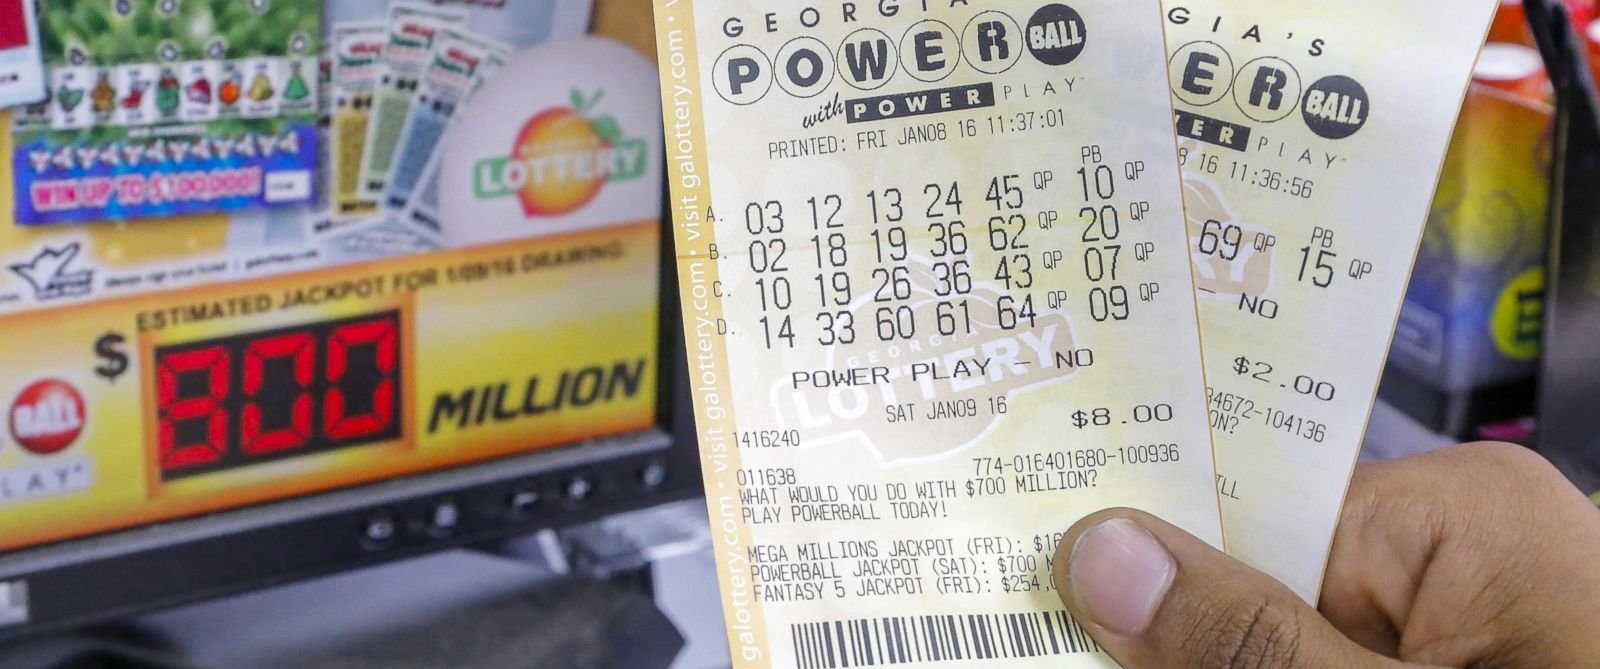 como se cadastrar na loteria online